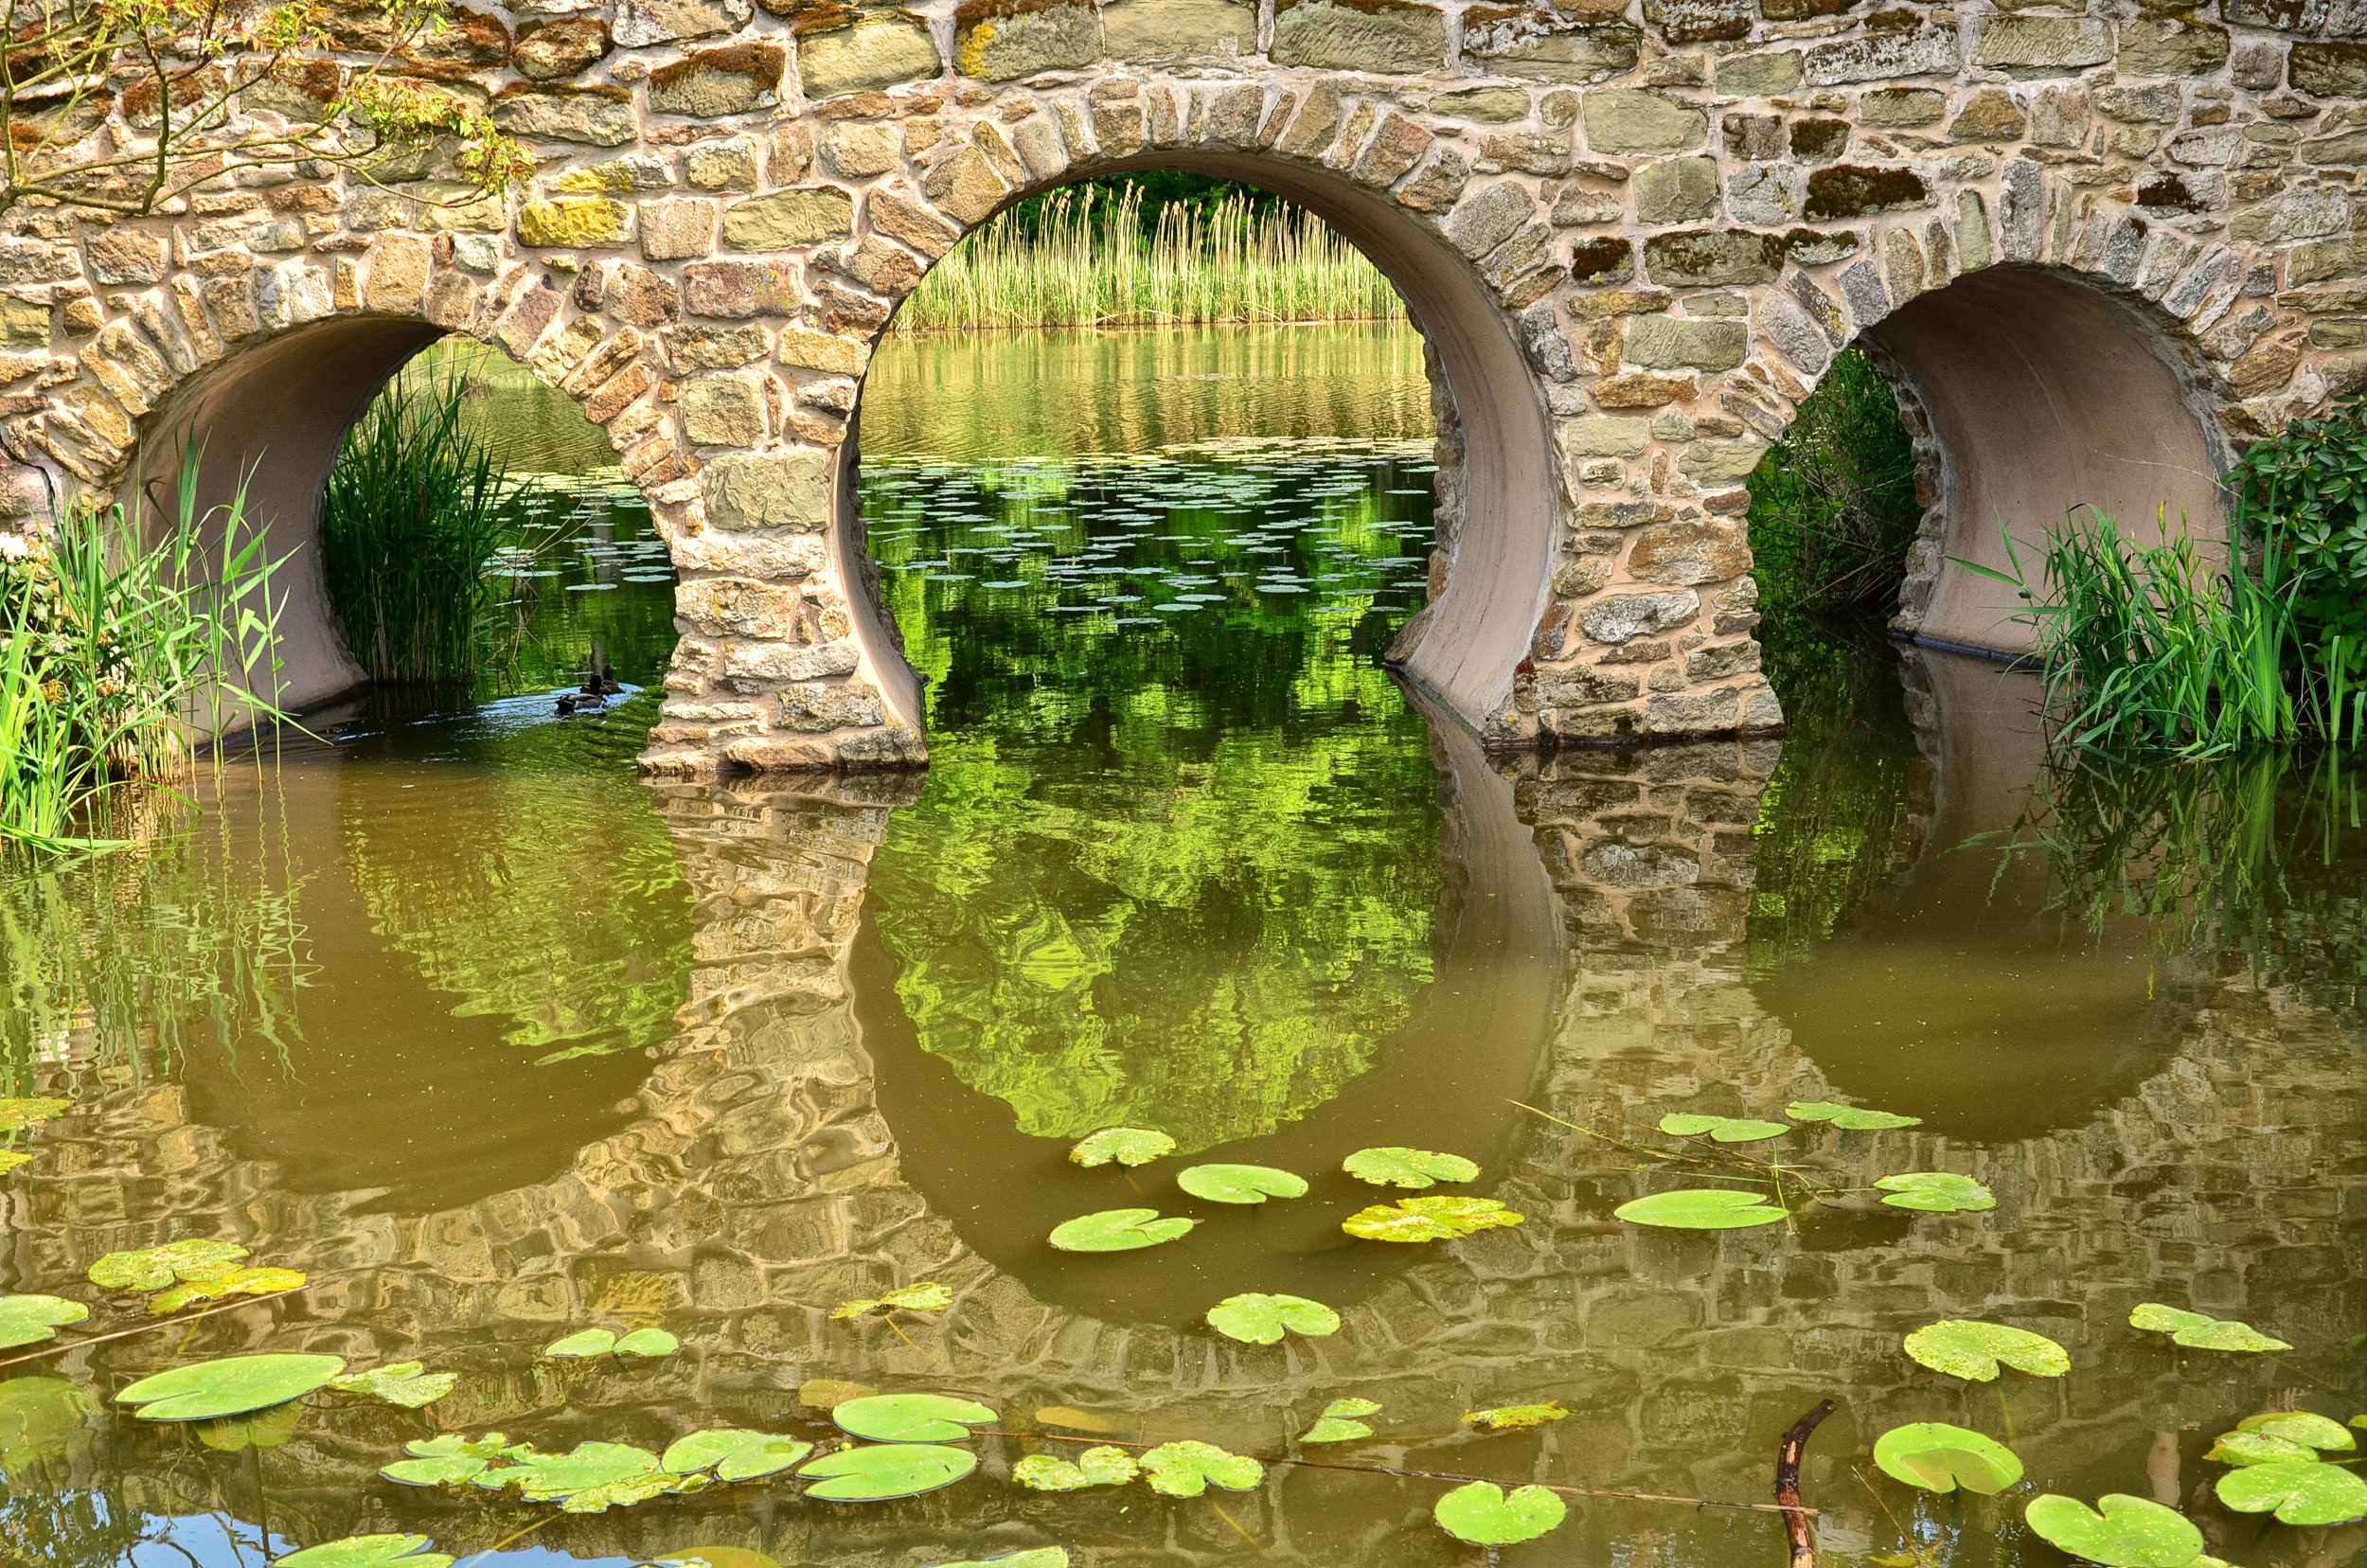 Арка в воде. Арка с водой. Красивые каменные мосты. Пруд с кувшинками. Природа река пруд мост.